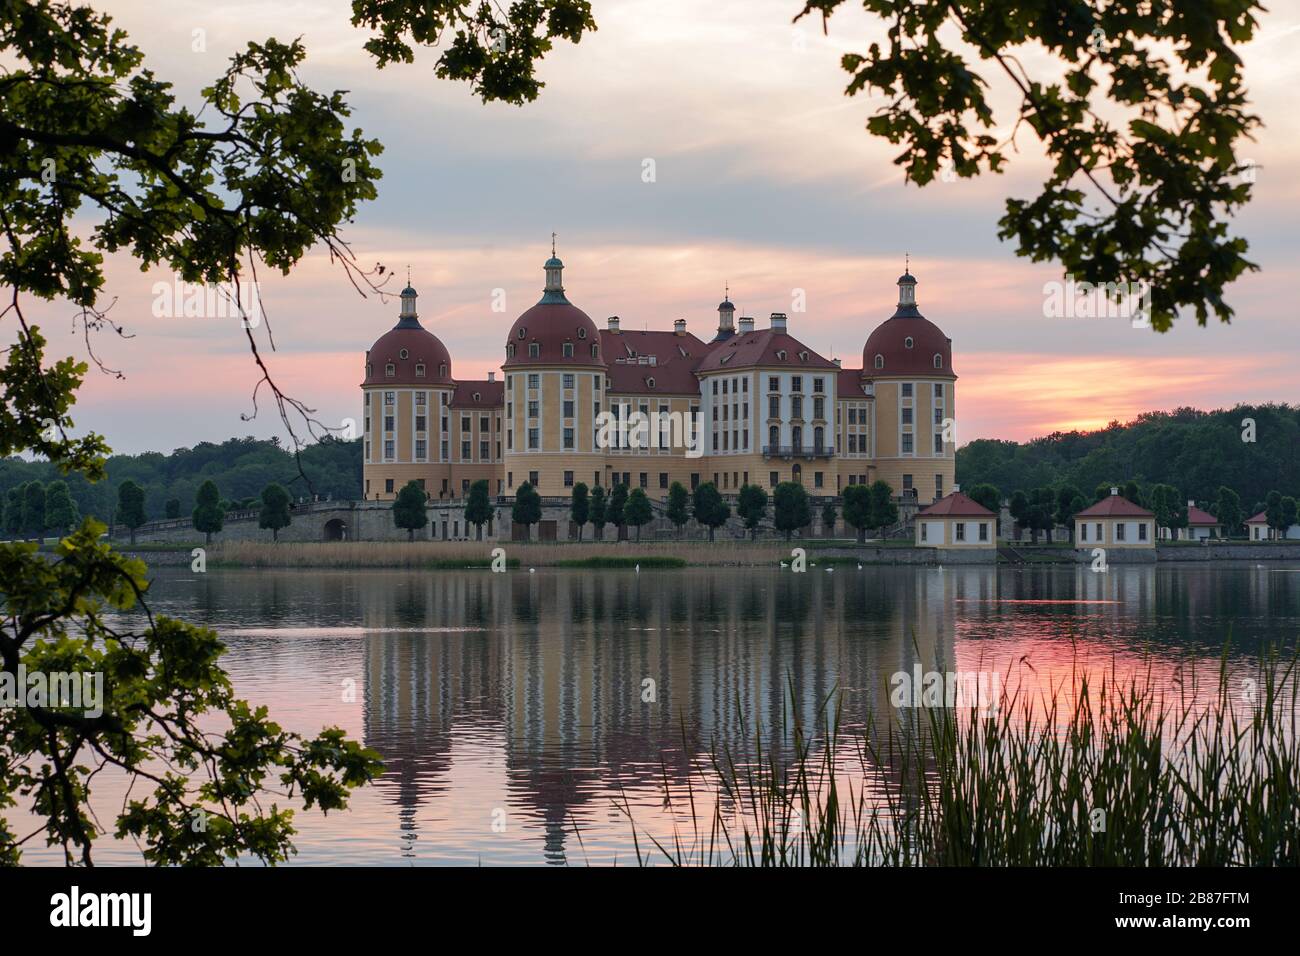 Das Schloss in Moritzburg, Deutschland von Blättern umgeben Stockfoto